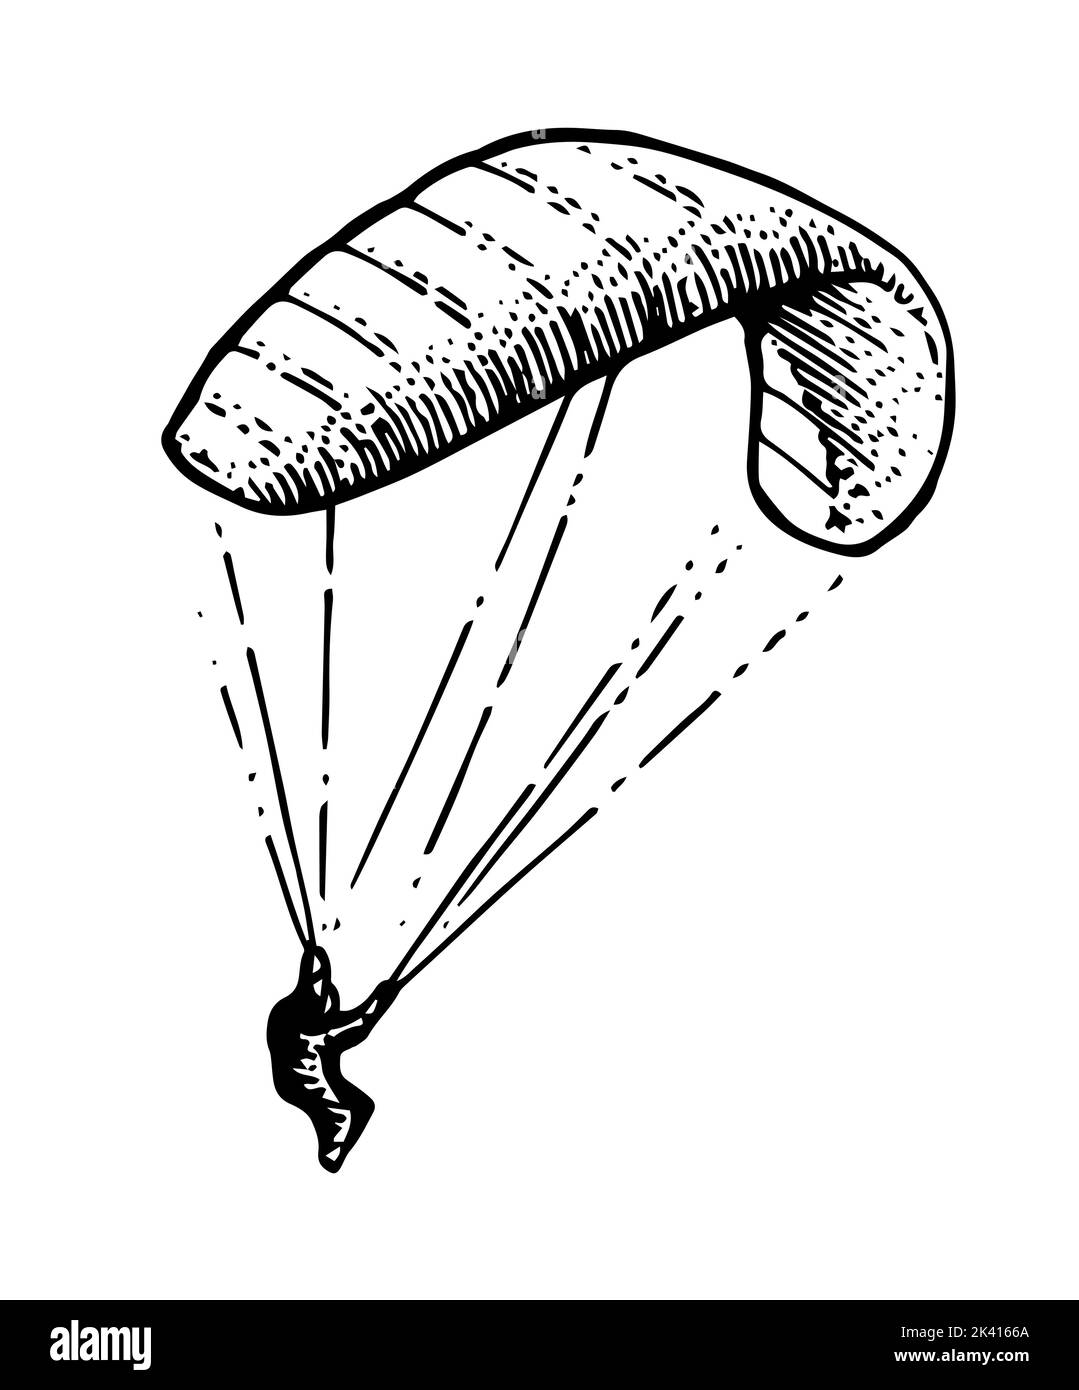 Fallschirmspringer senkt sich. Gleitschirm mit Fallschirm. Air Extremsport. Kontrollierter Höhenflug. Handgezeichnete Umrissskizze. Isoliert auf Weiß Stock Vektor